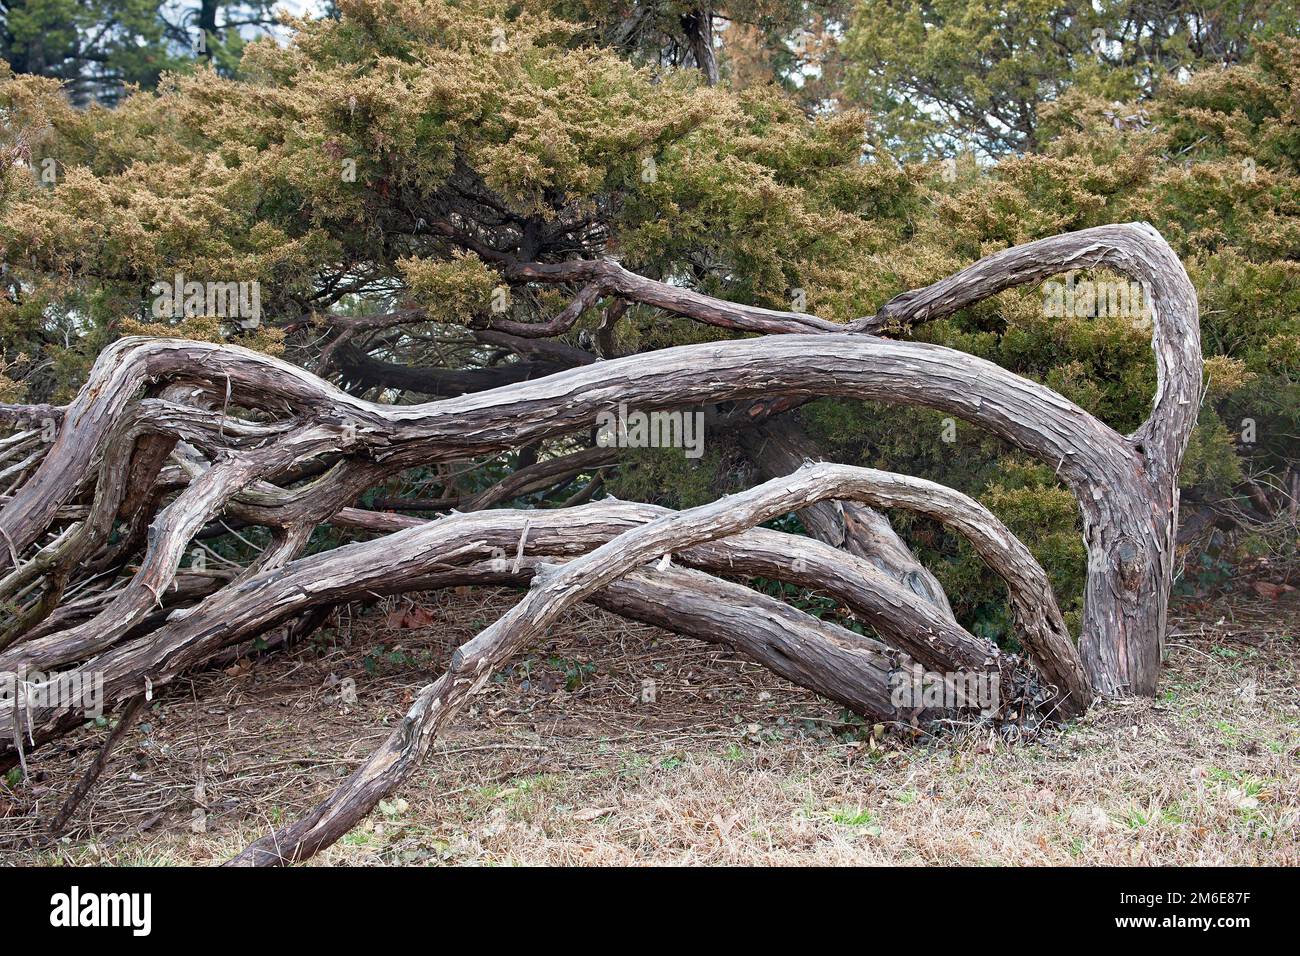 General view of Savin juniper (Juniperus sabina) Stock Photo